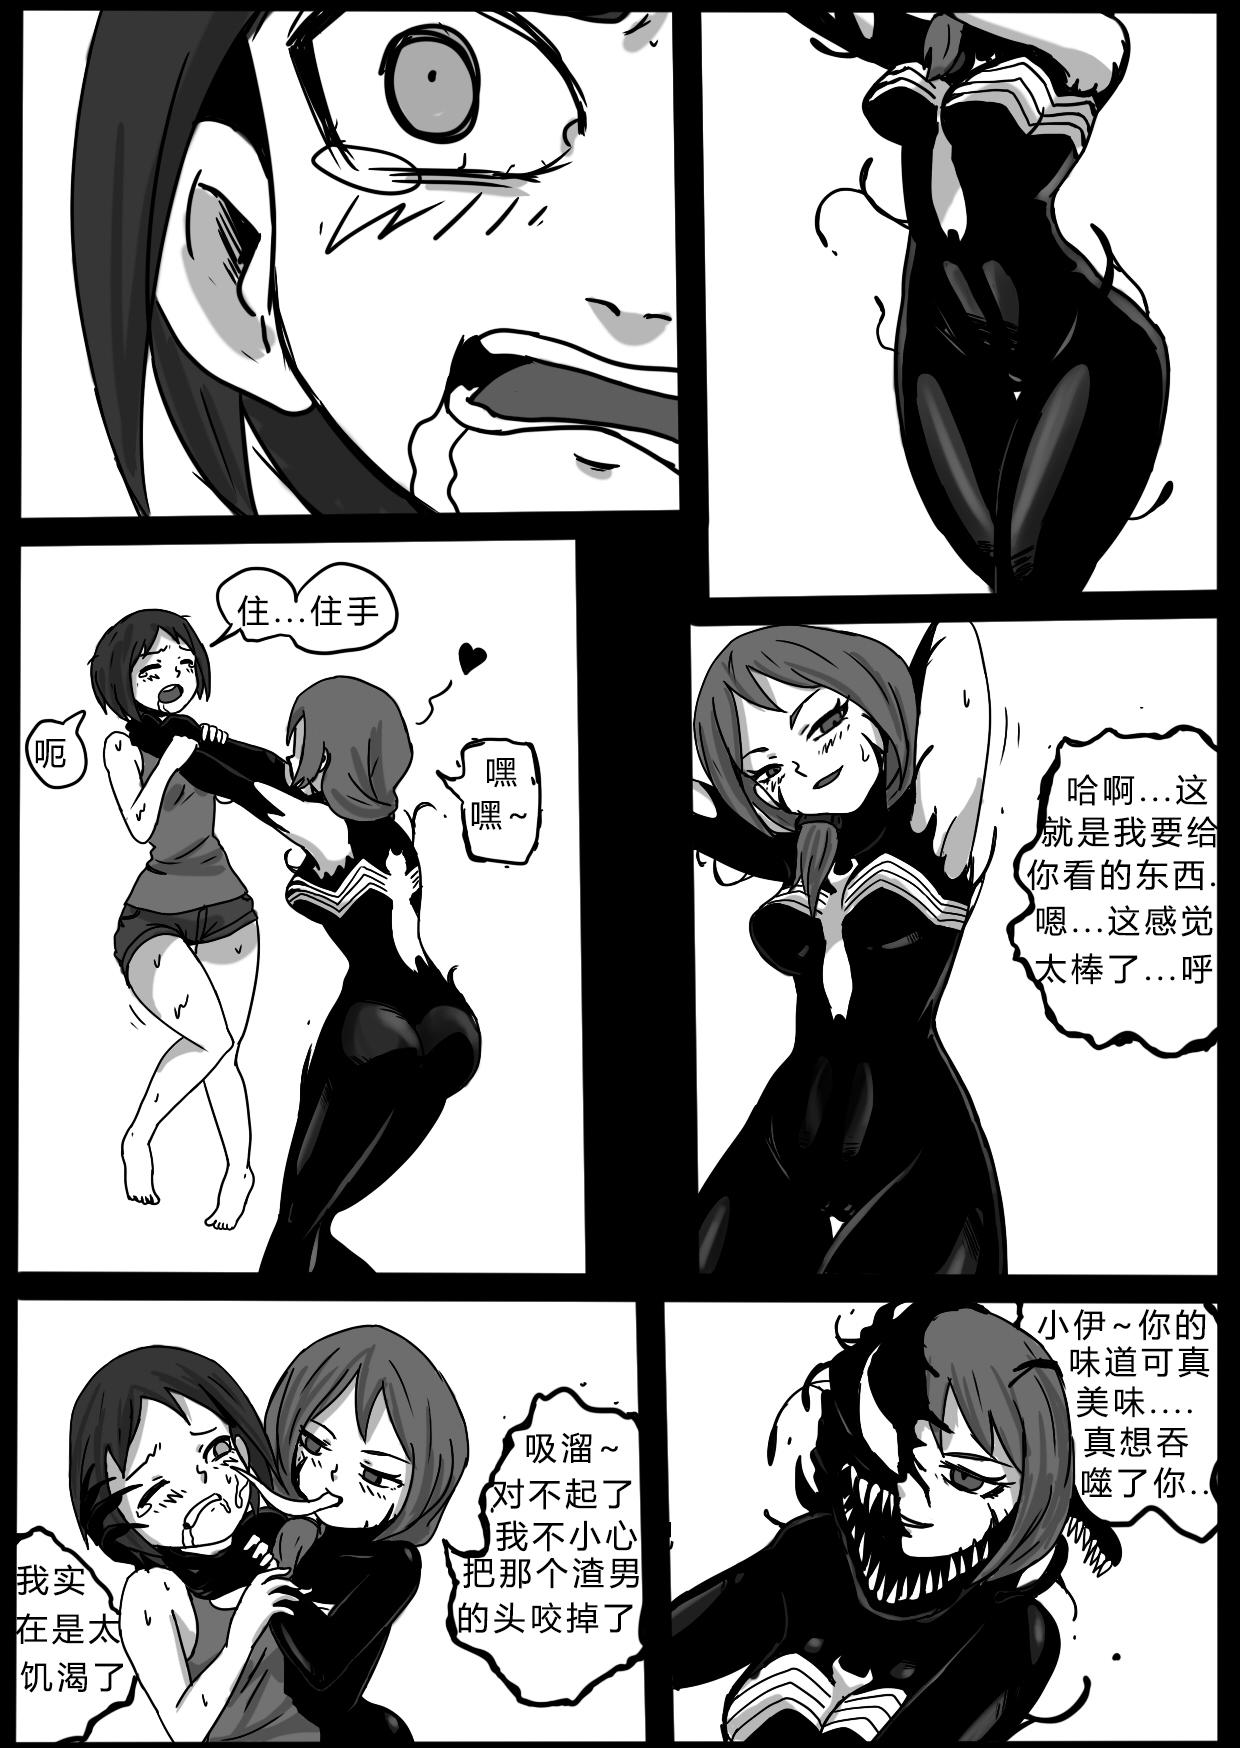 Show Venom intrusion II Ex Girlfriends - Page 5